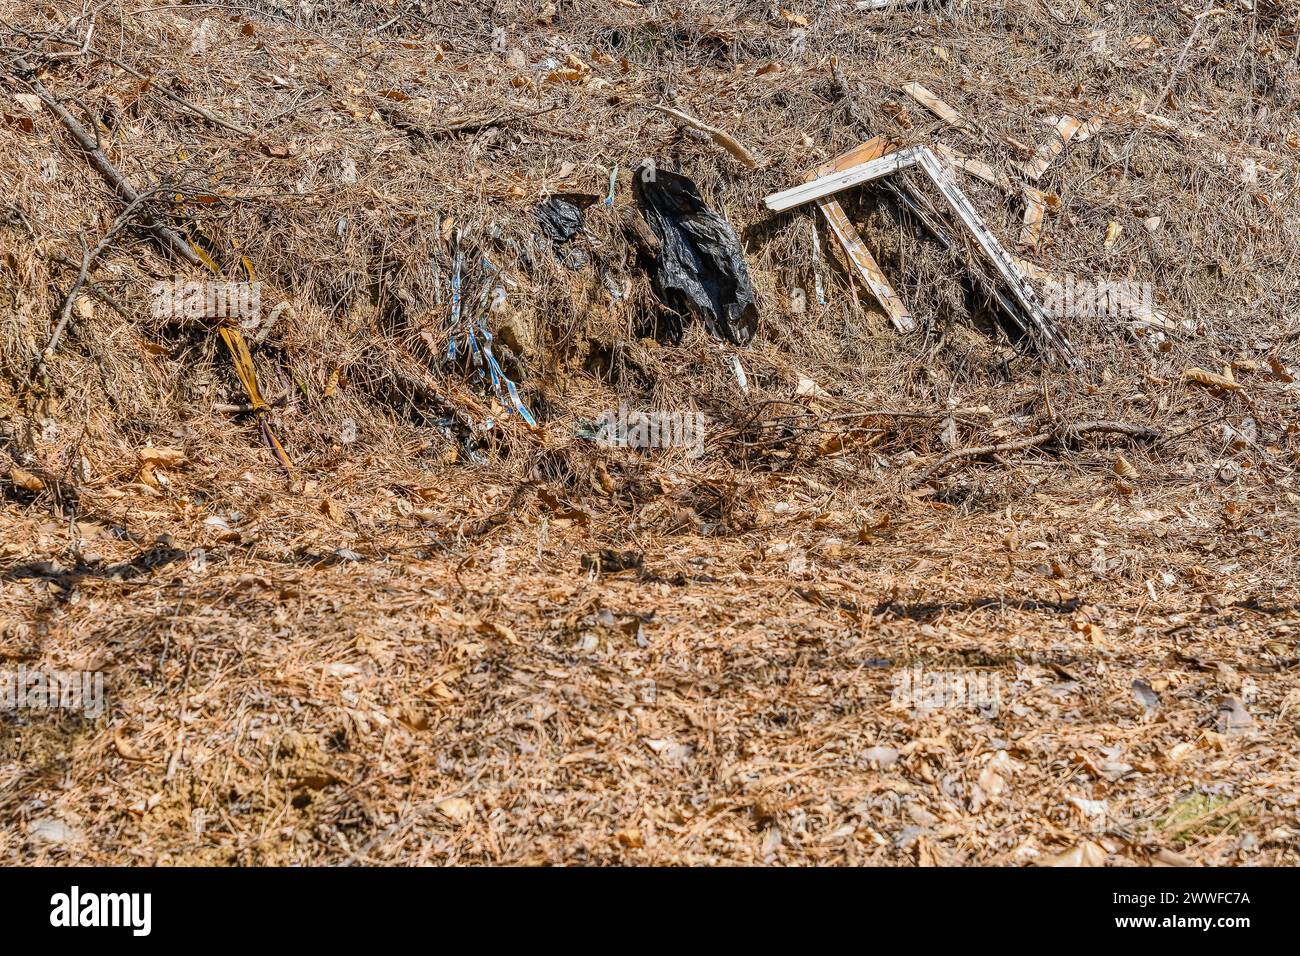 Les déchets jetés et les sacs en plastique noirs polluent une zone herbacée sèche, en Corée du Sud Banque D'Images